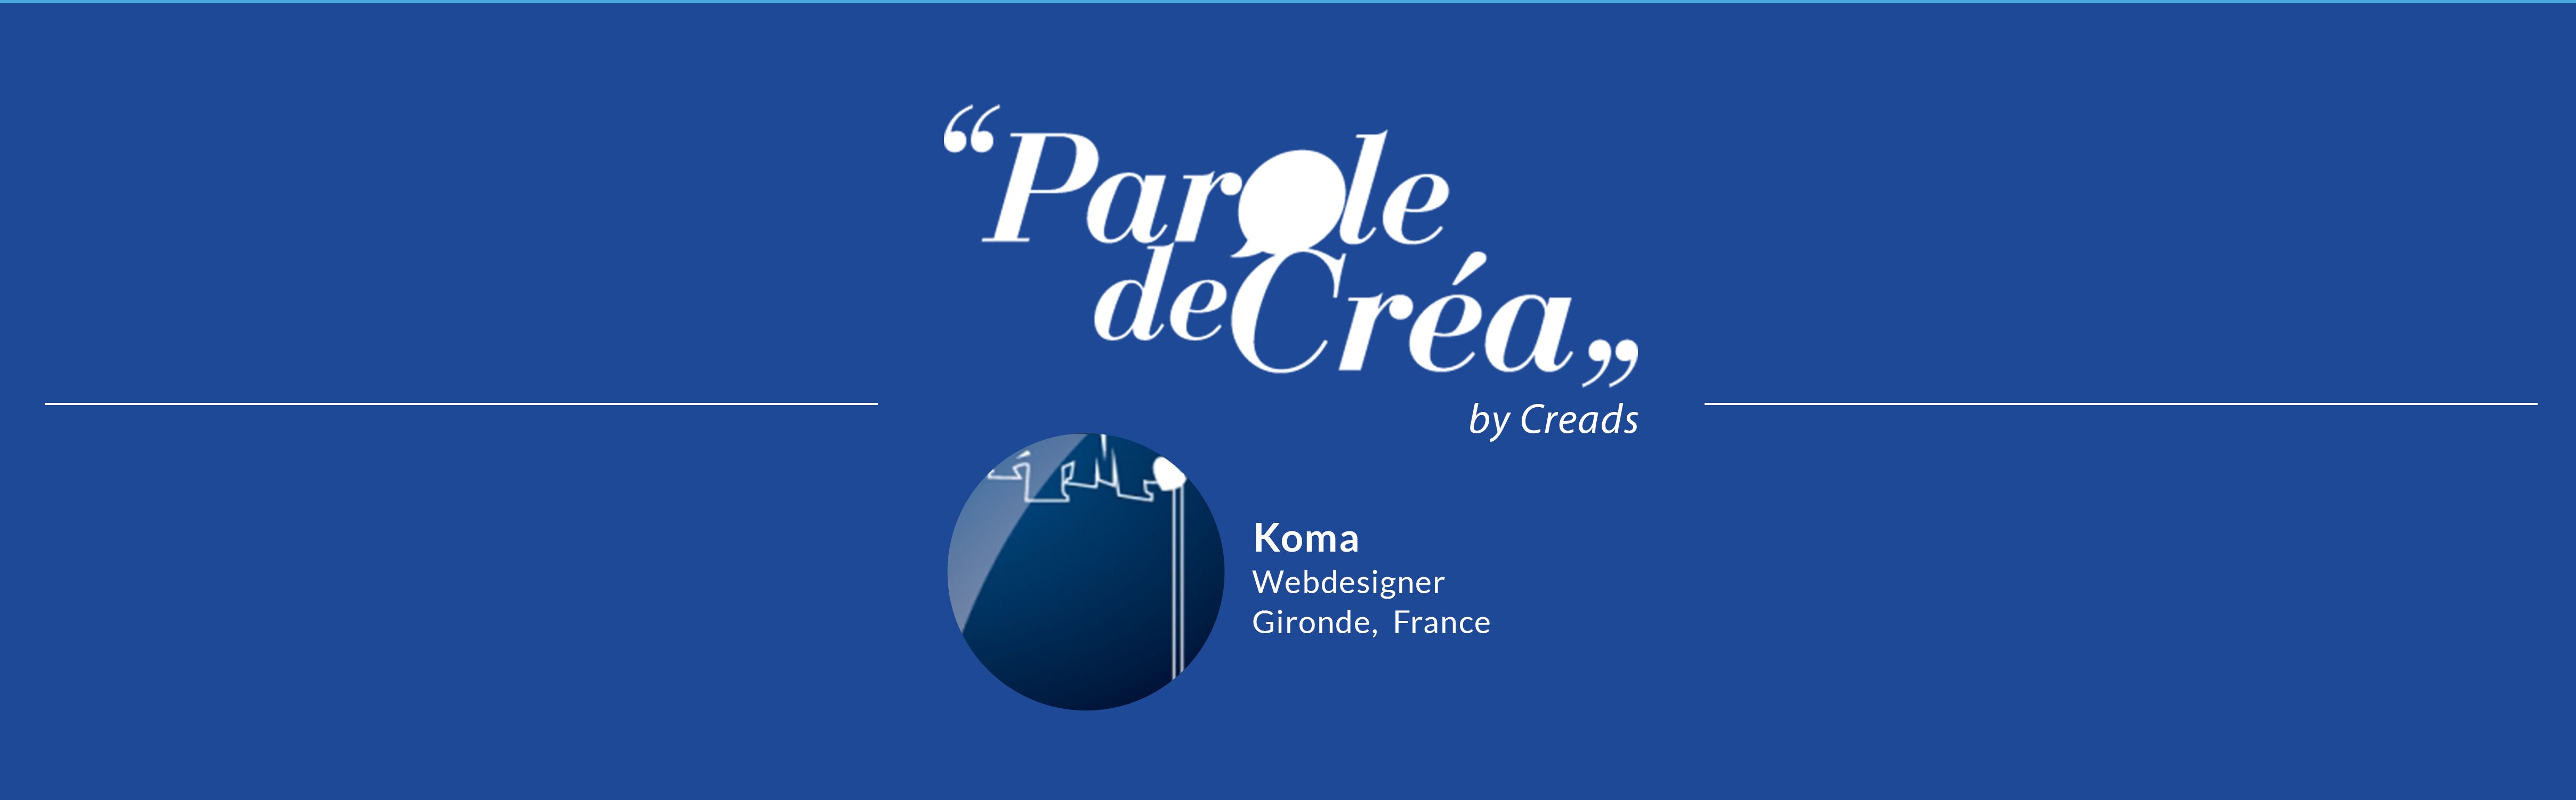 Paroles de Créa - Découvrez l&#039;interview de @Koma !